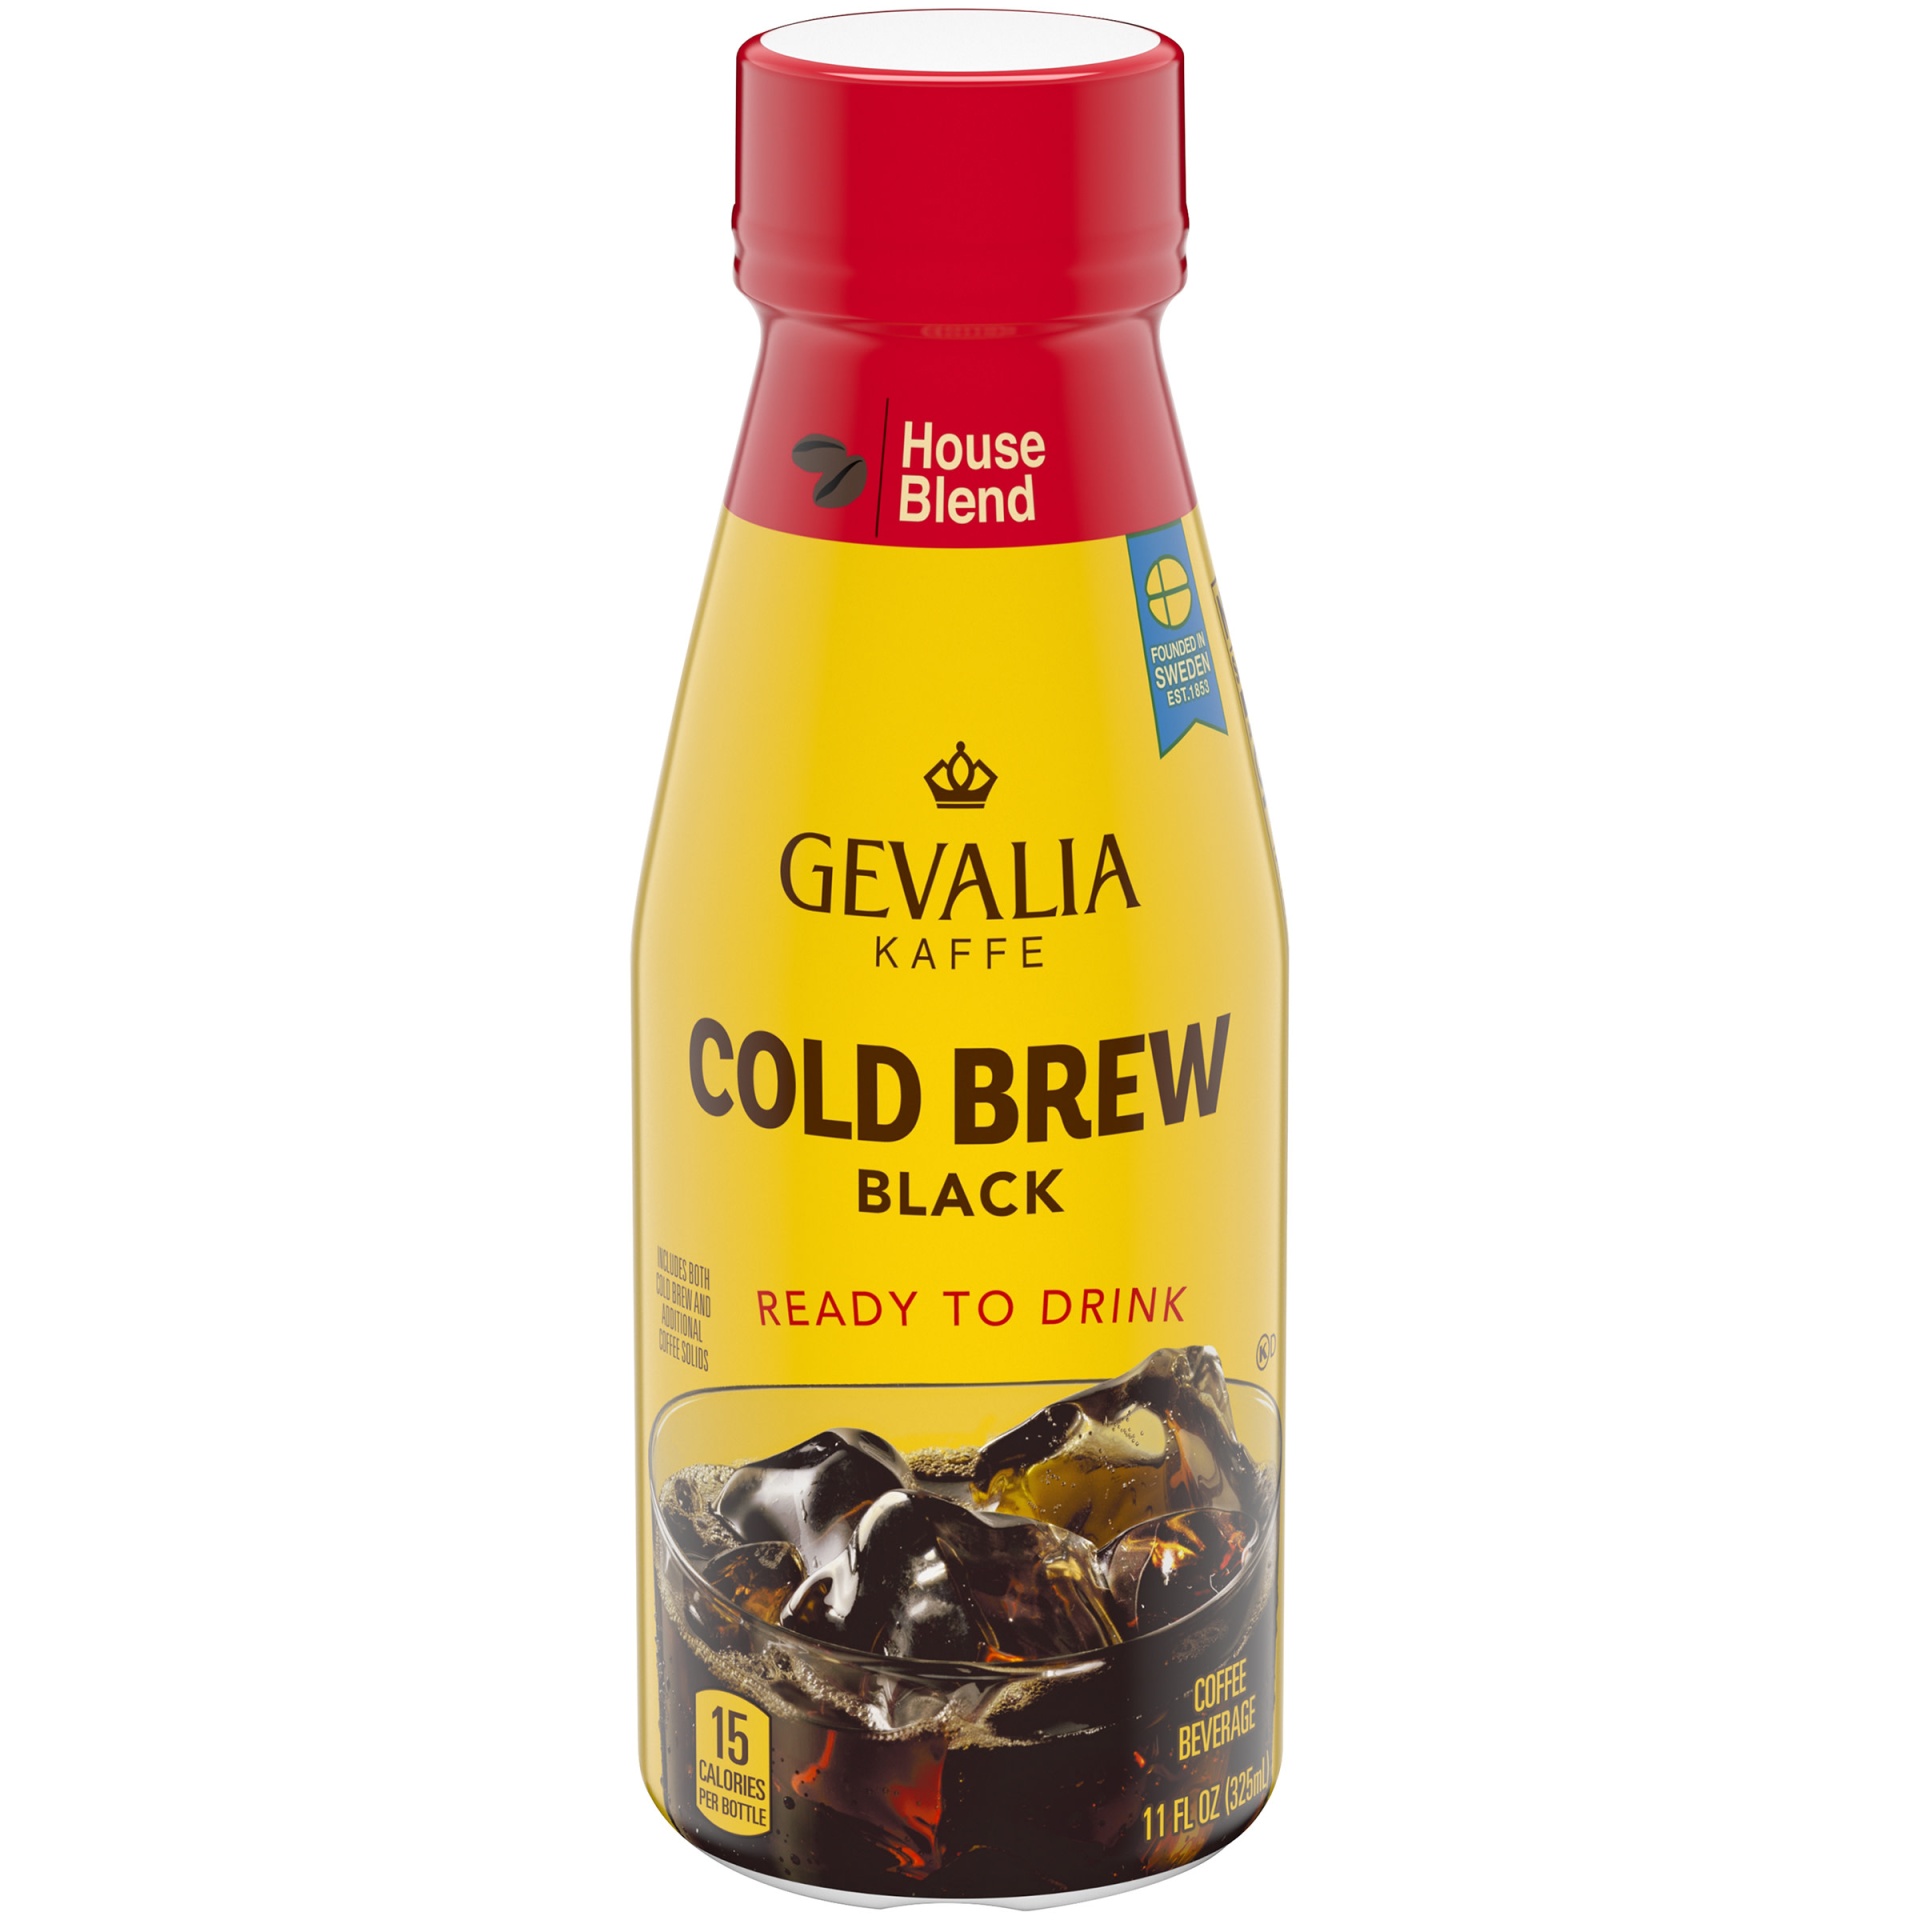 slide 1 of 6, Gevalia Cold Brew House Blend Black Ready To Drink Coffee Beverage Bottle, 11 fl oz